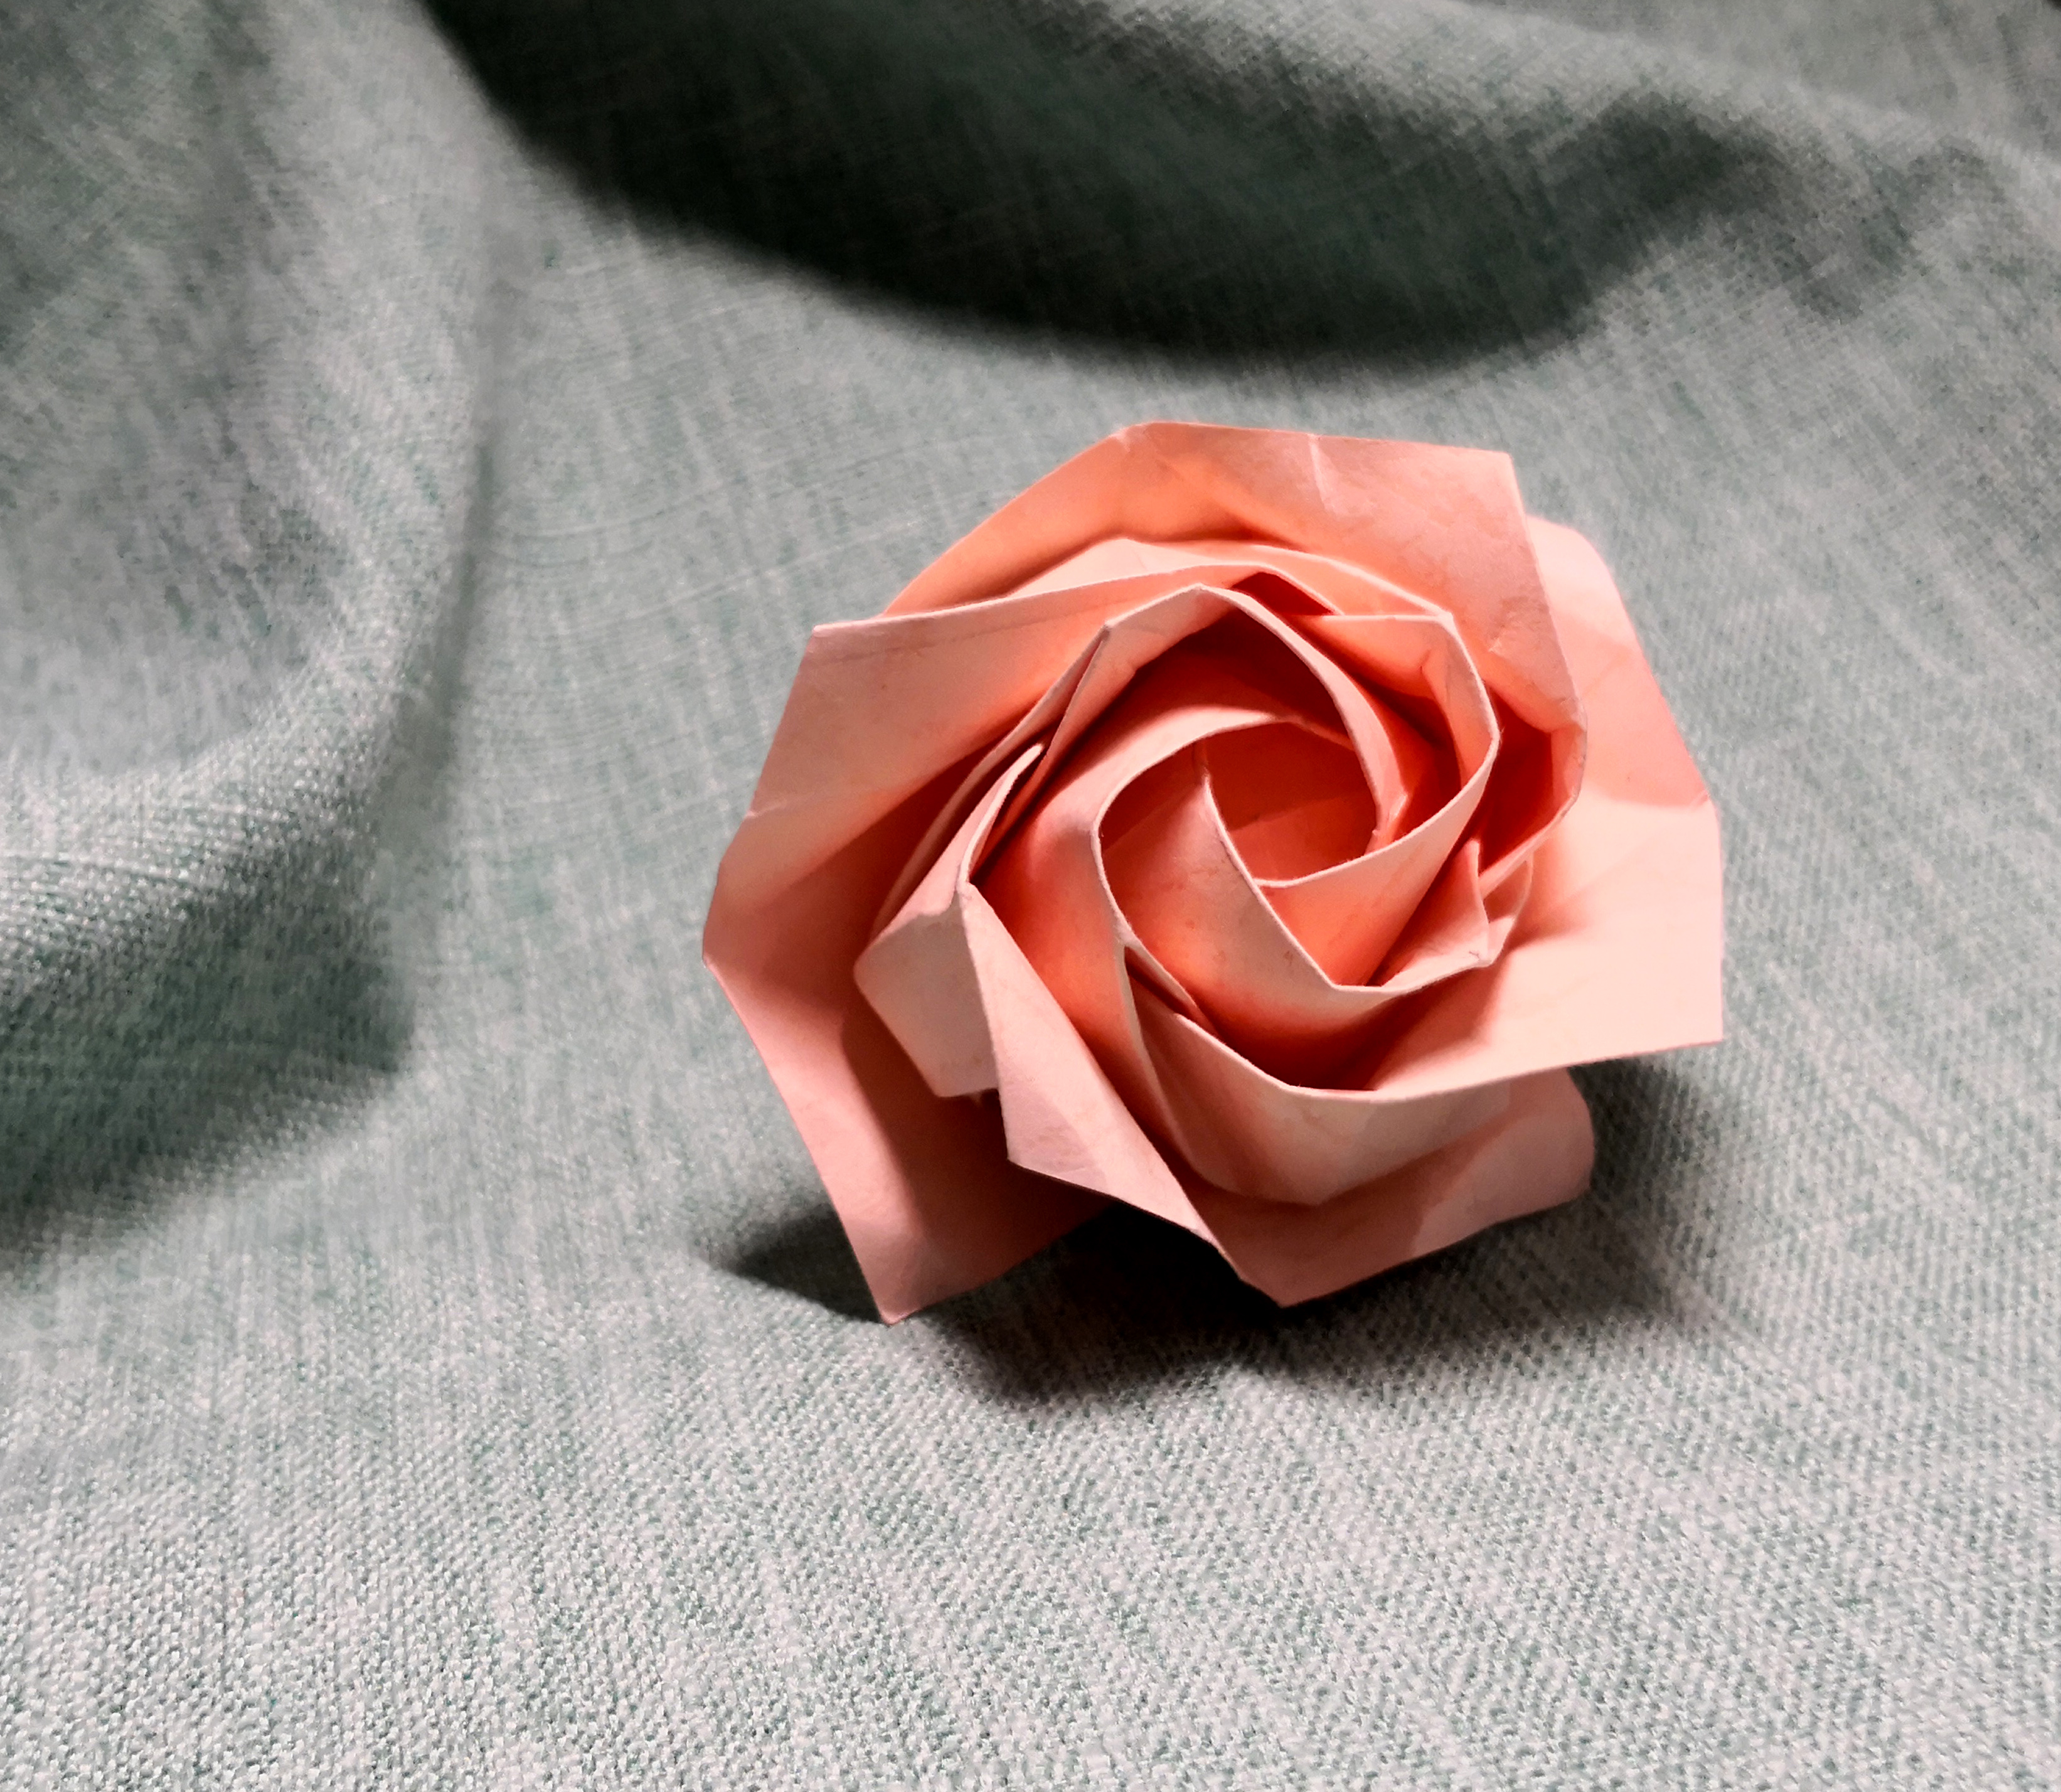 折纸视频:川崎玫瑰 欧美玫瑰 五瓣佐藤玫瑰折纸大全